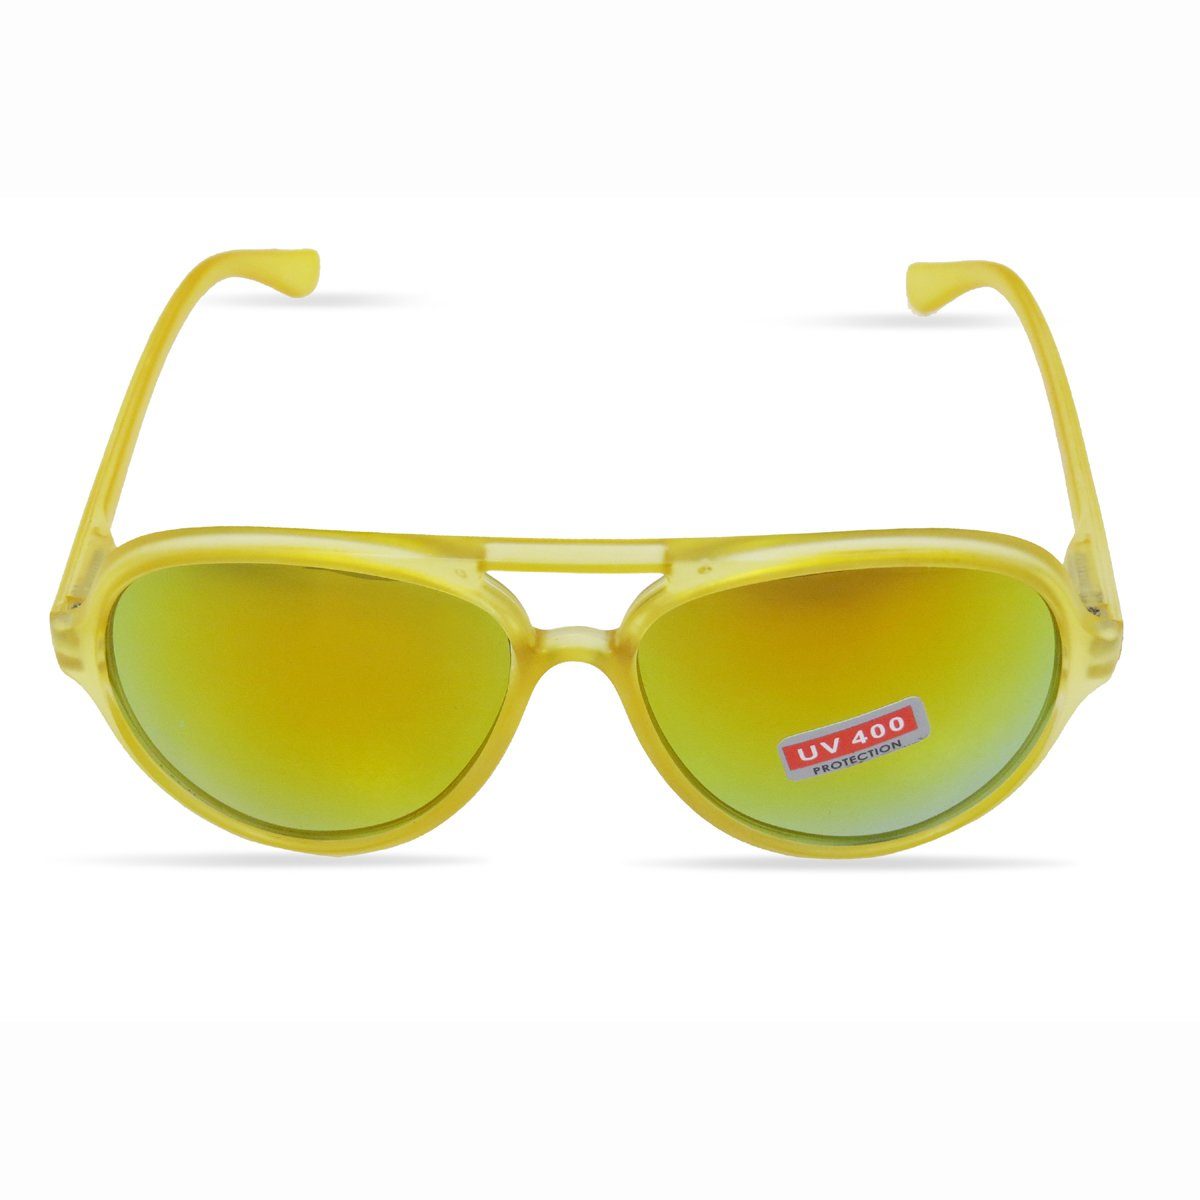 Sonia Originelli Sonnenbrille Brille Sonnenbrille Party Onesize Modern Verspiegelt gelb